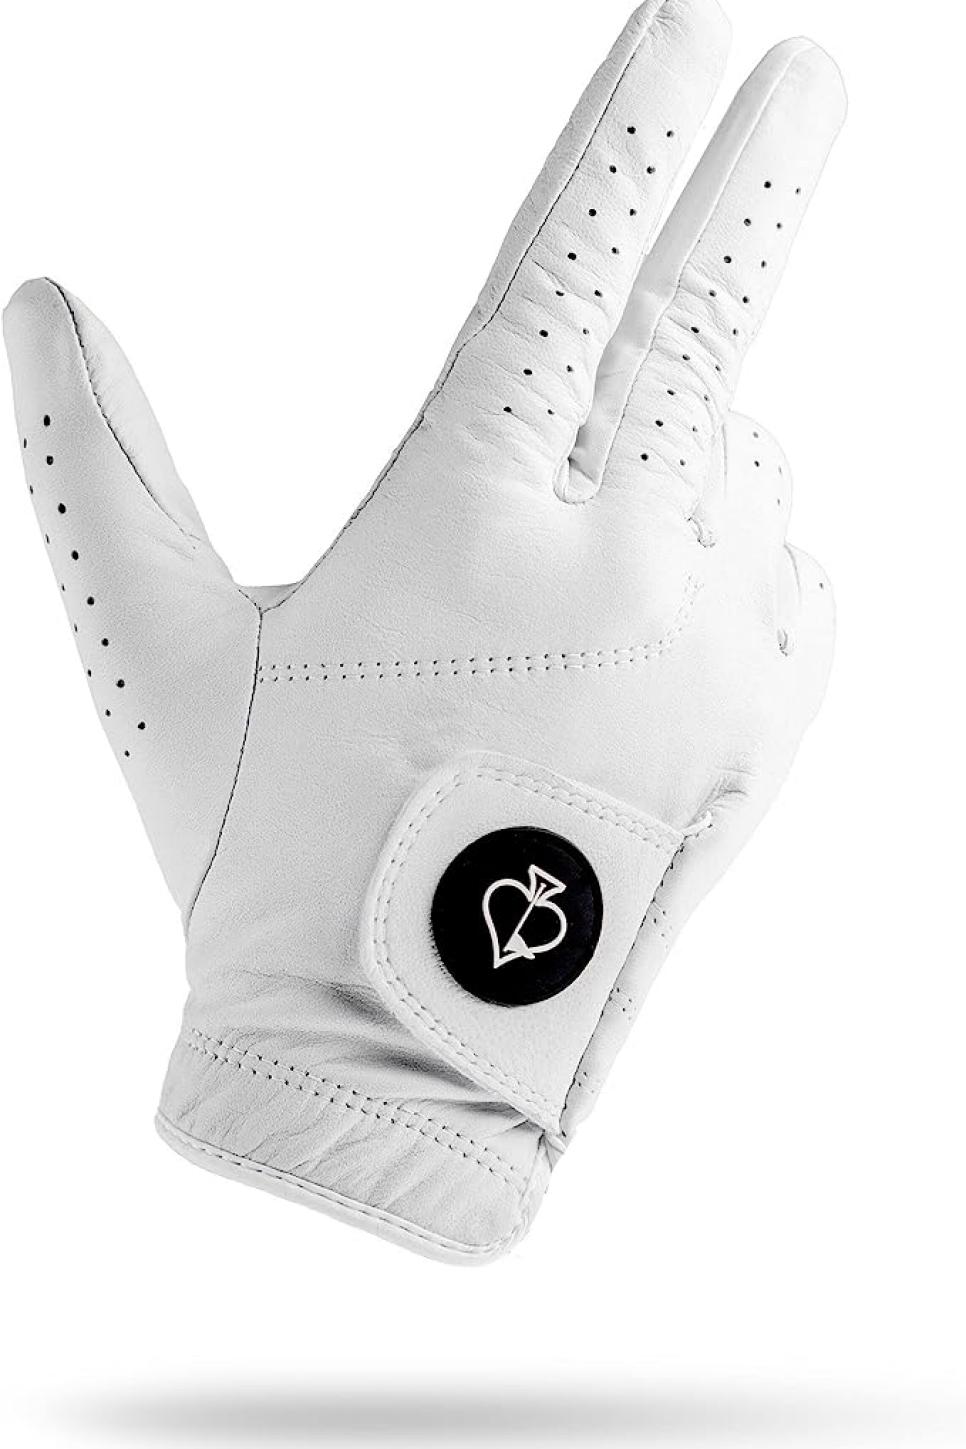 rx-amazonpins--aces---ghost-white-golf-glove-design.jpeg